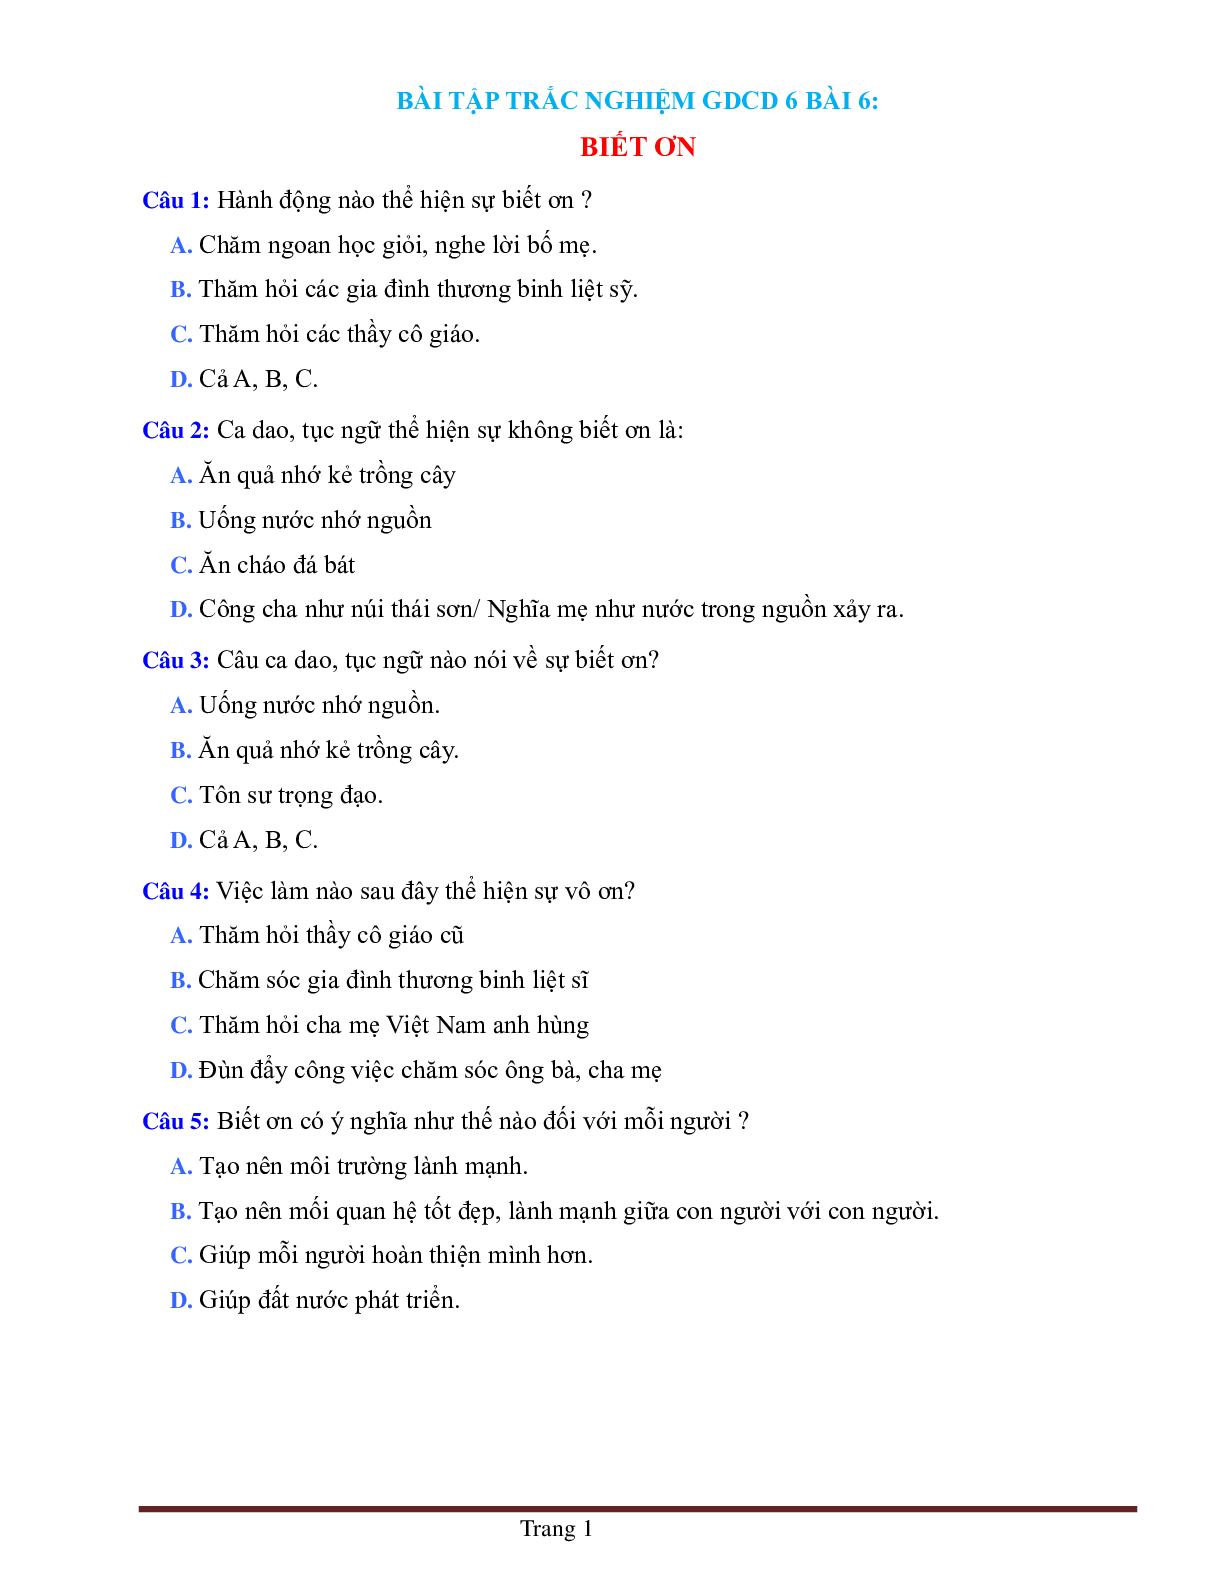 BÀI TẬP TRẮC NGHIỆM GDCD 6 BÀI 6: BIẾT ƠN CÓ ĐÁP ÁN, CHỌN LỌC (trang 1)